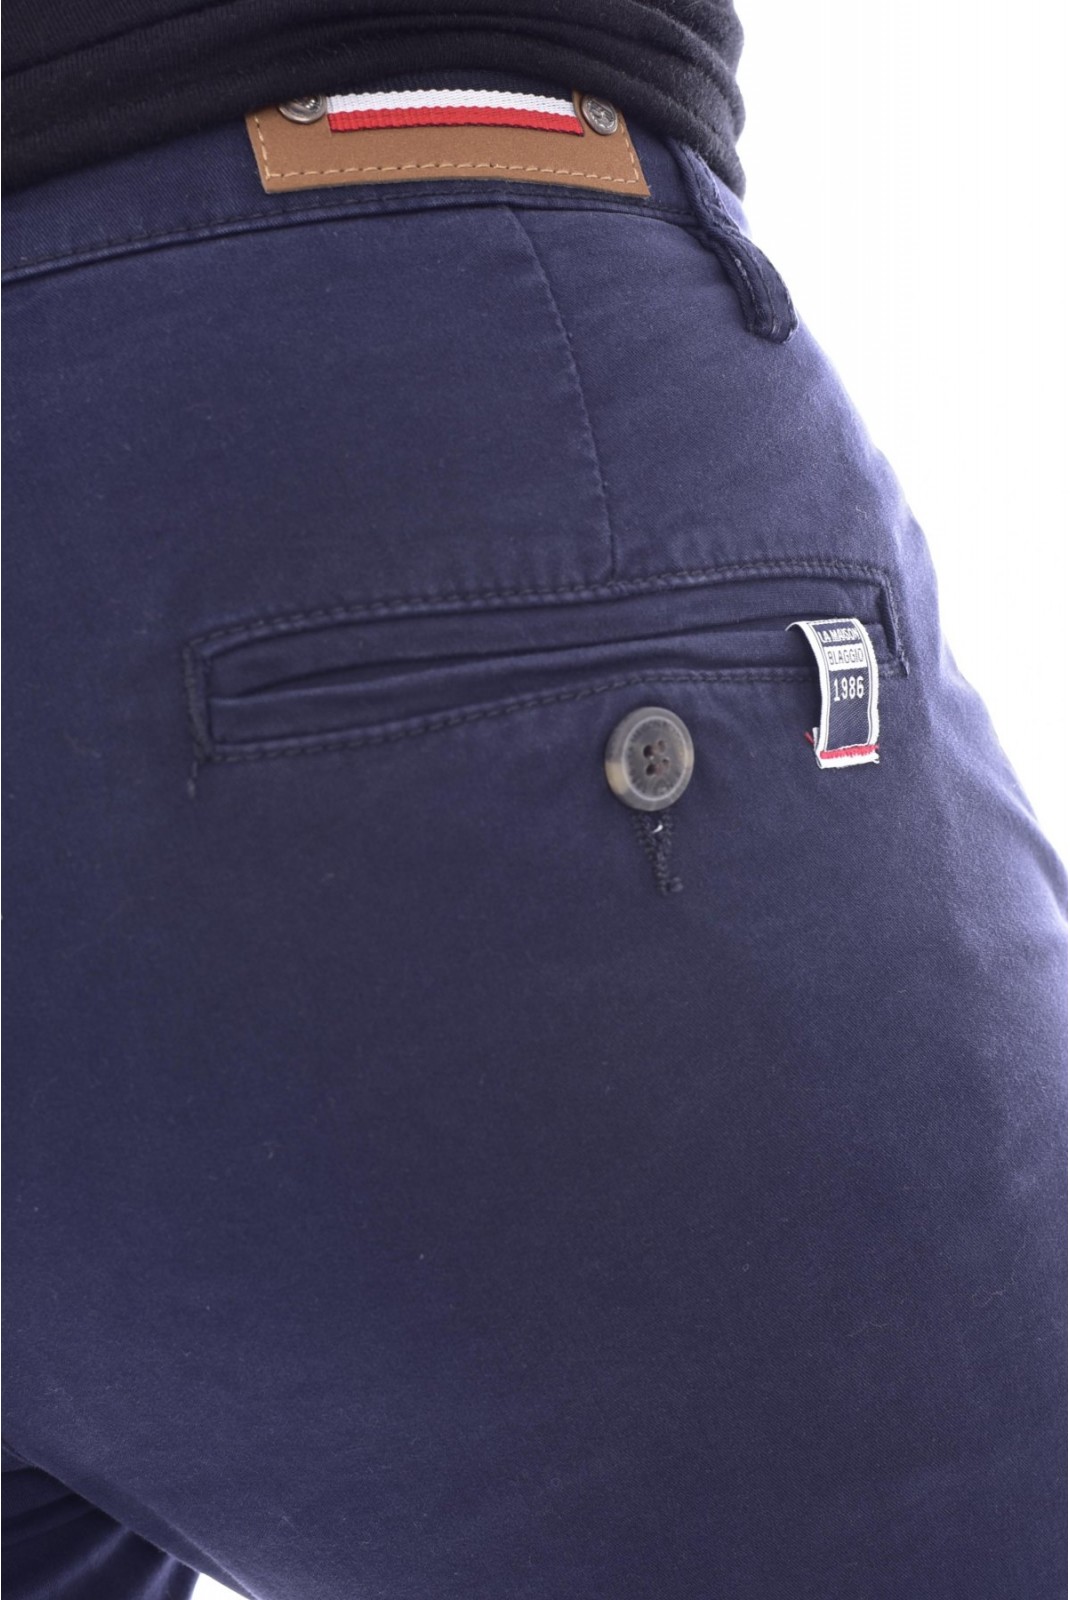 Pantalon chino coton stretch La Maison Blaggio NAVY TENALI-S24